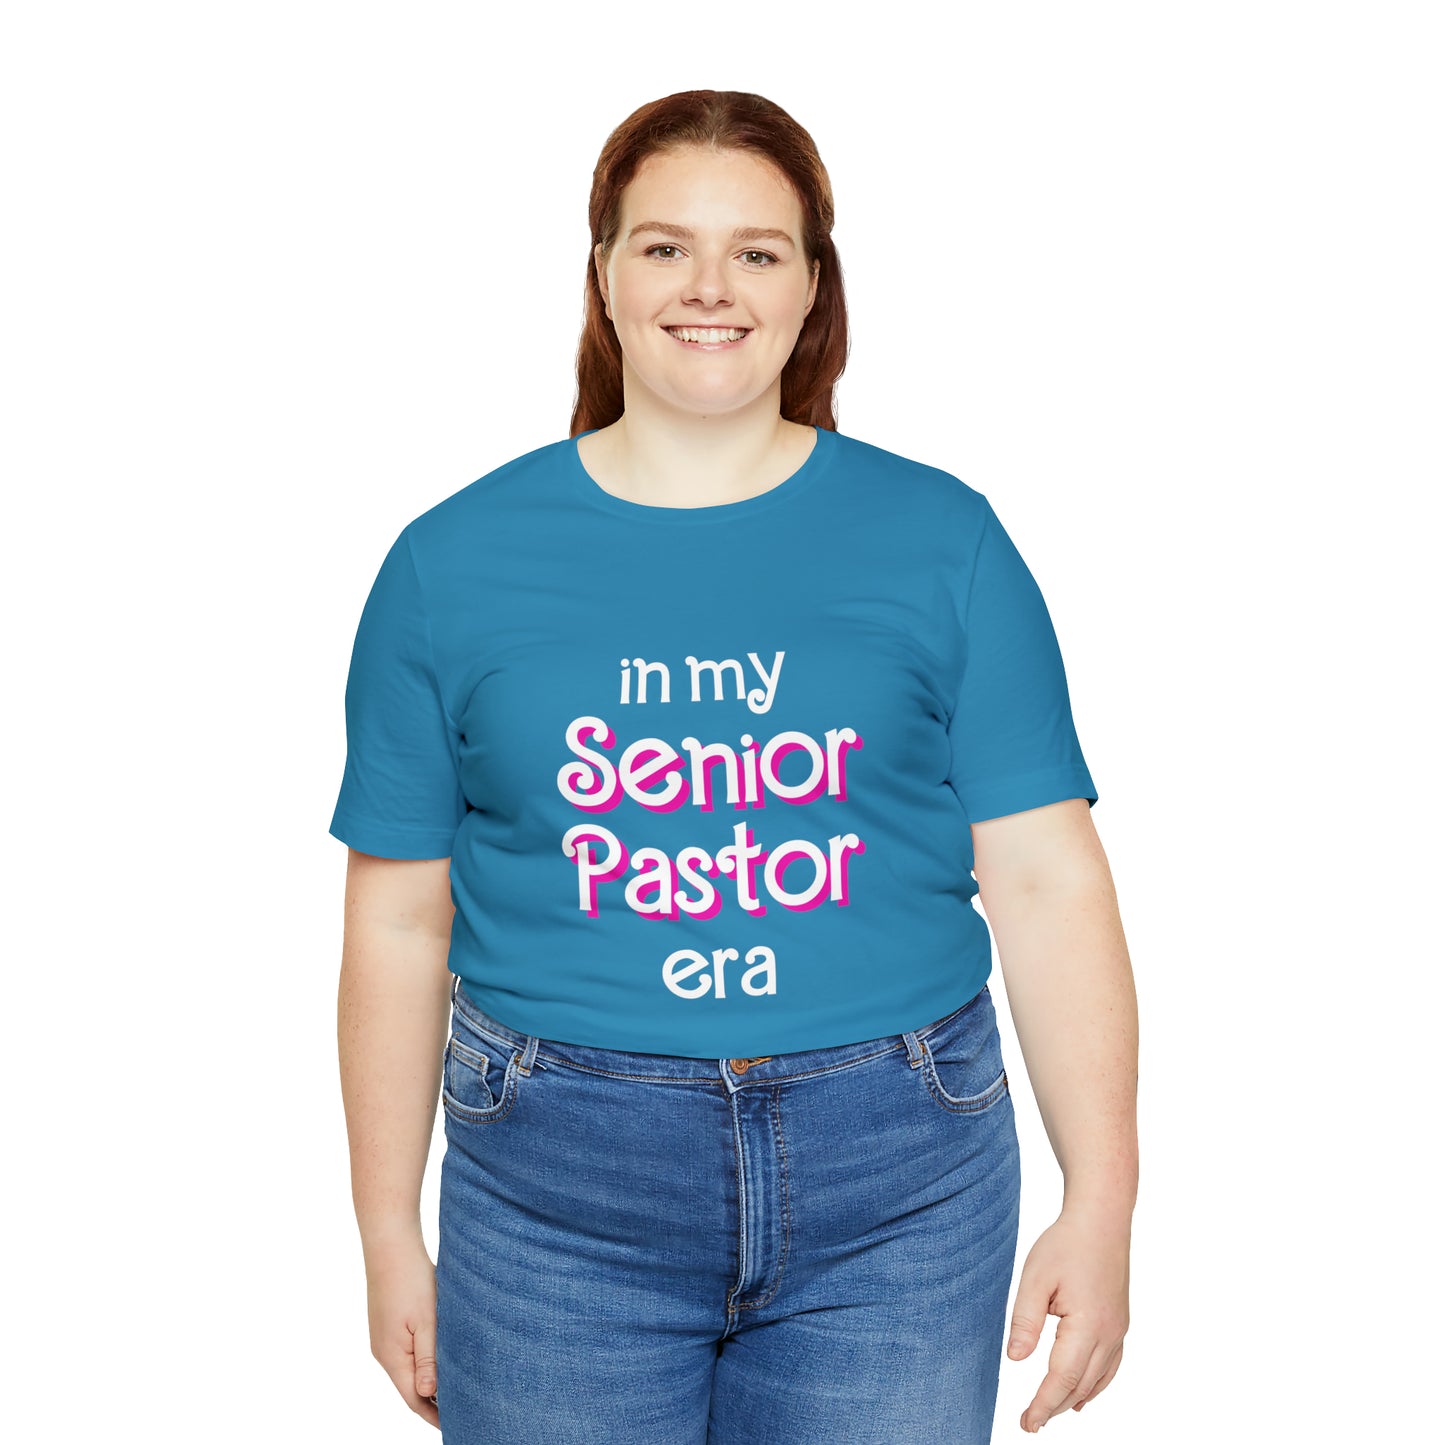 Senior Pastor Short Sleeve Tee Senior Pastor Shirt Senior Pastor Tshirt for Senior Pastor Gift